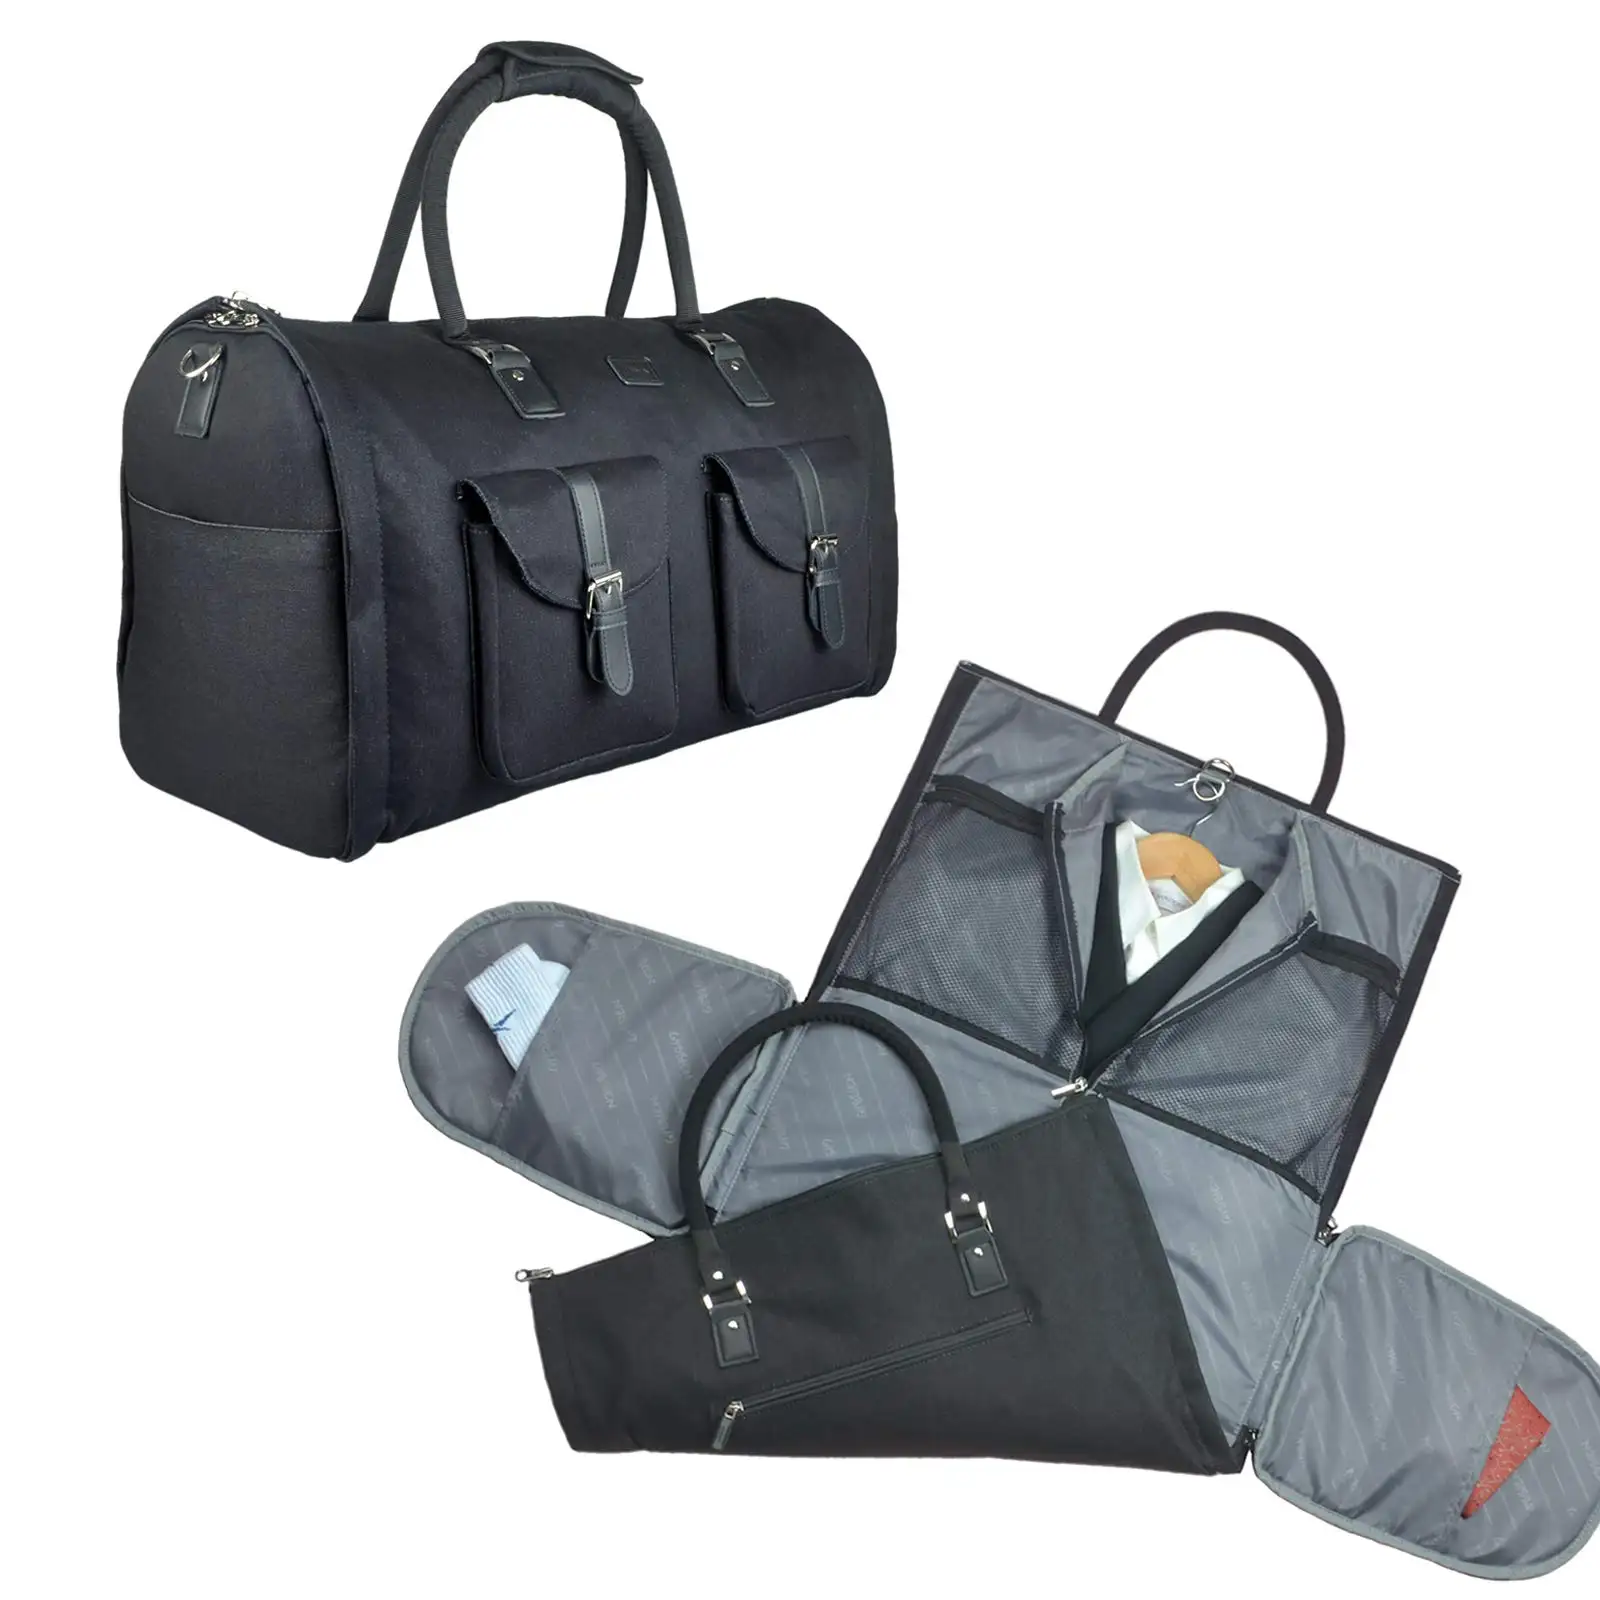 थोक नवीनतम डिजाइन धूल-प्रमाण 2 में 1 परिवर्तनीय यात्रा परिधान बैग बैग बैग बैग में ले जाने के लिए